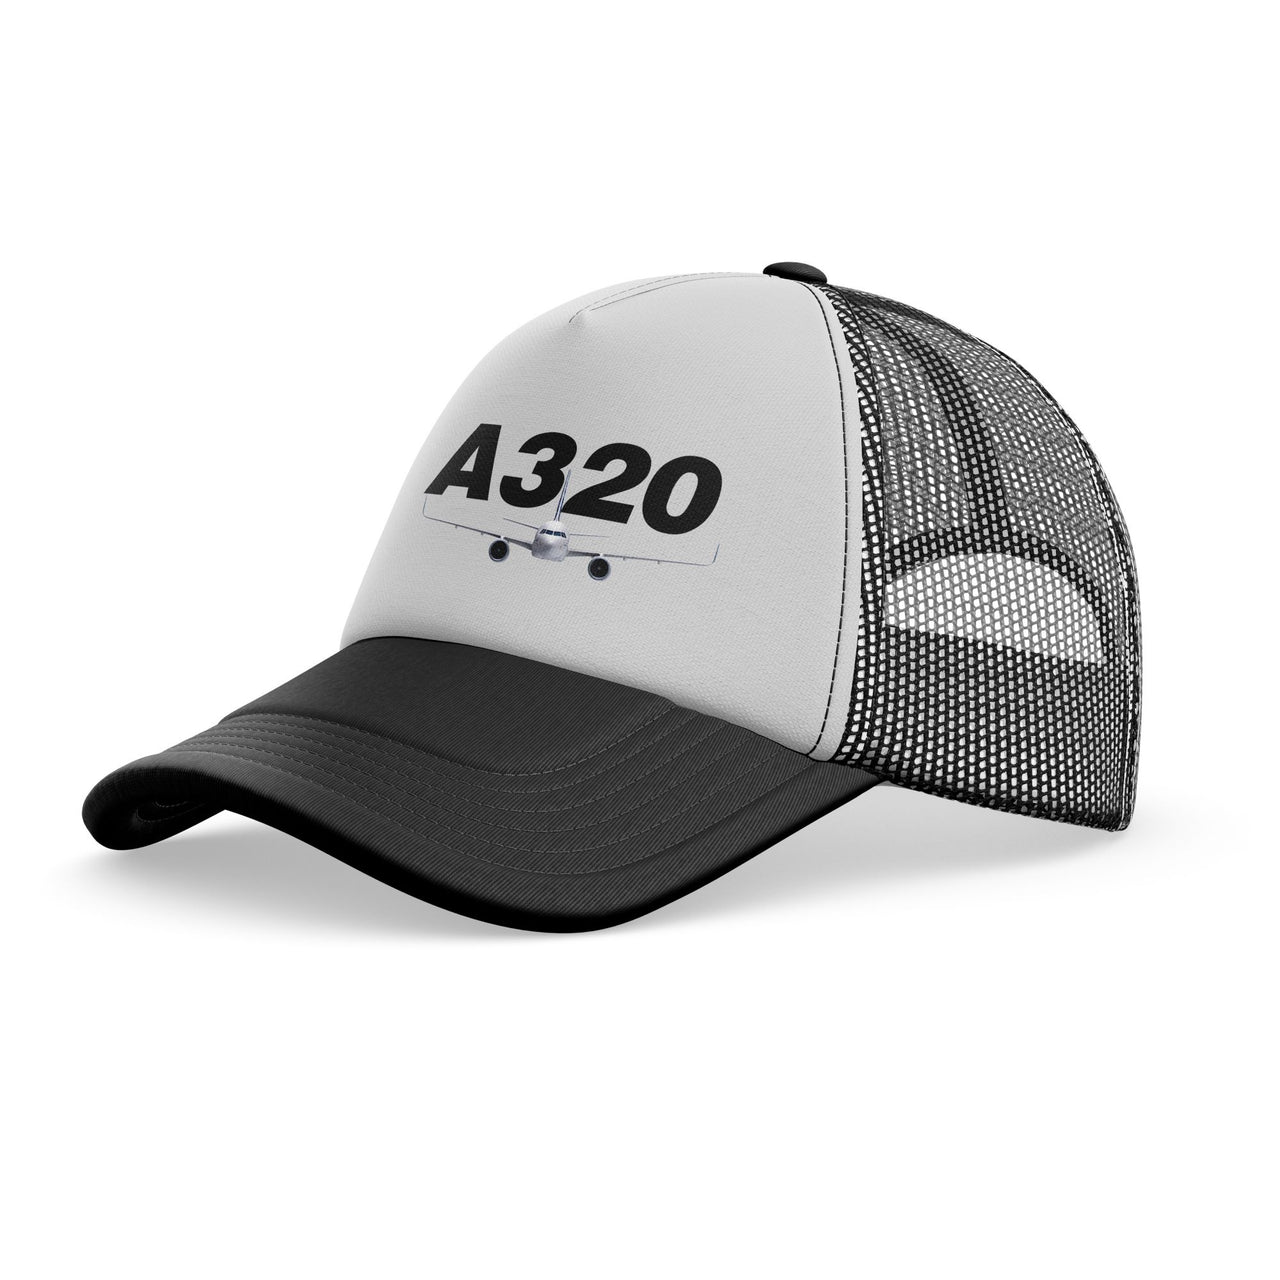 Super Airbus A320 Designed Trucker Caps & Hats